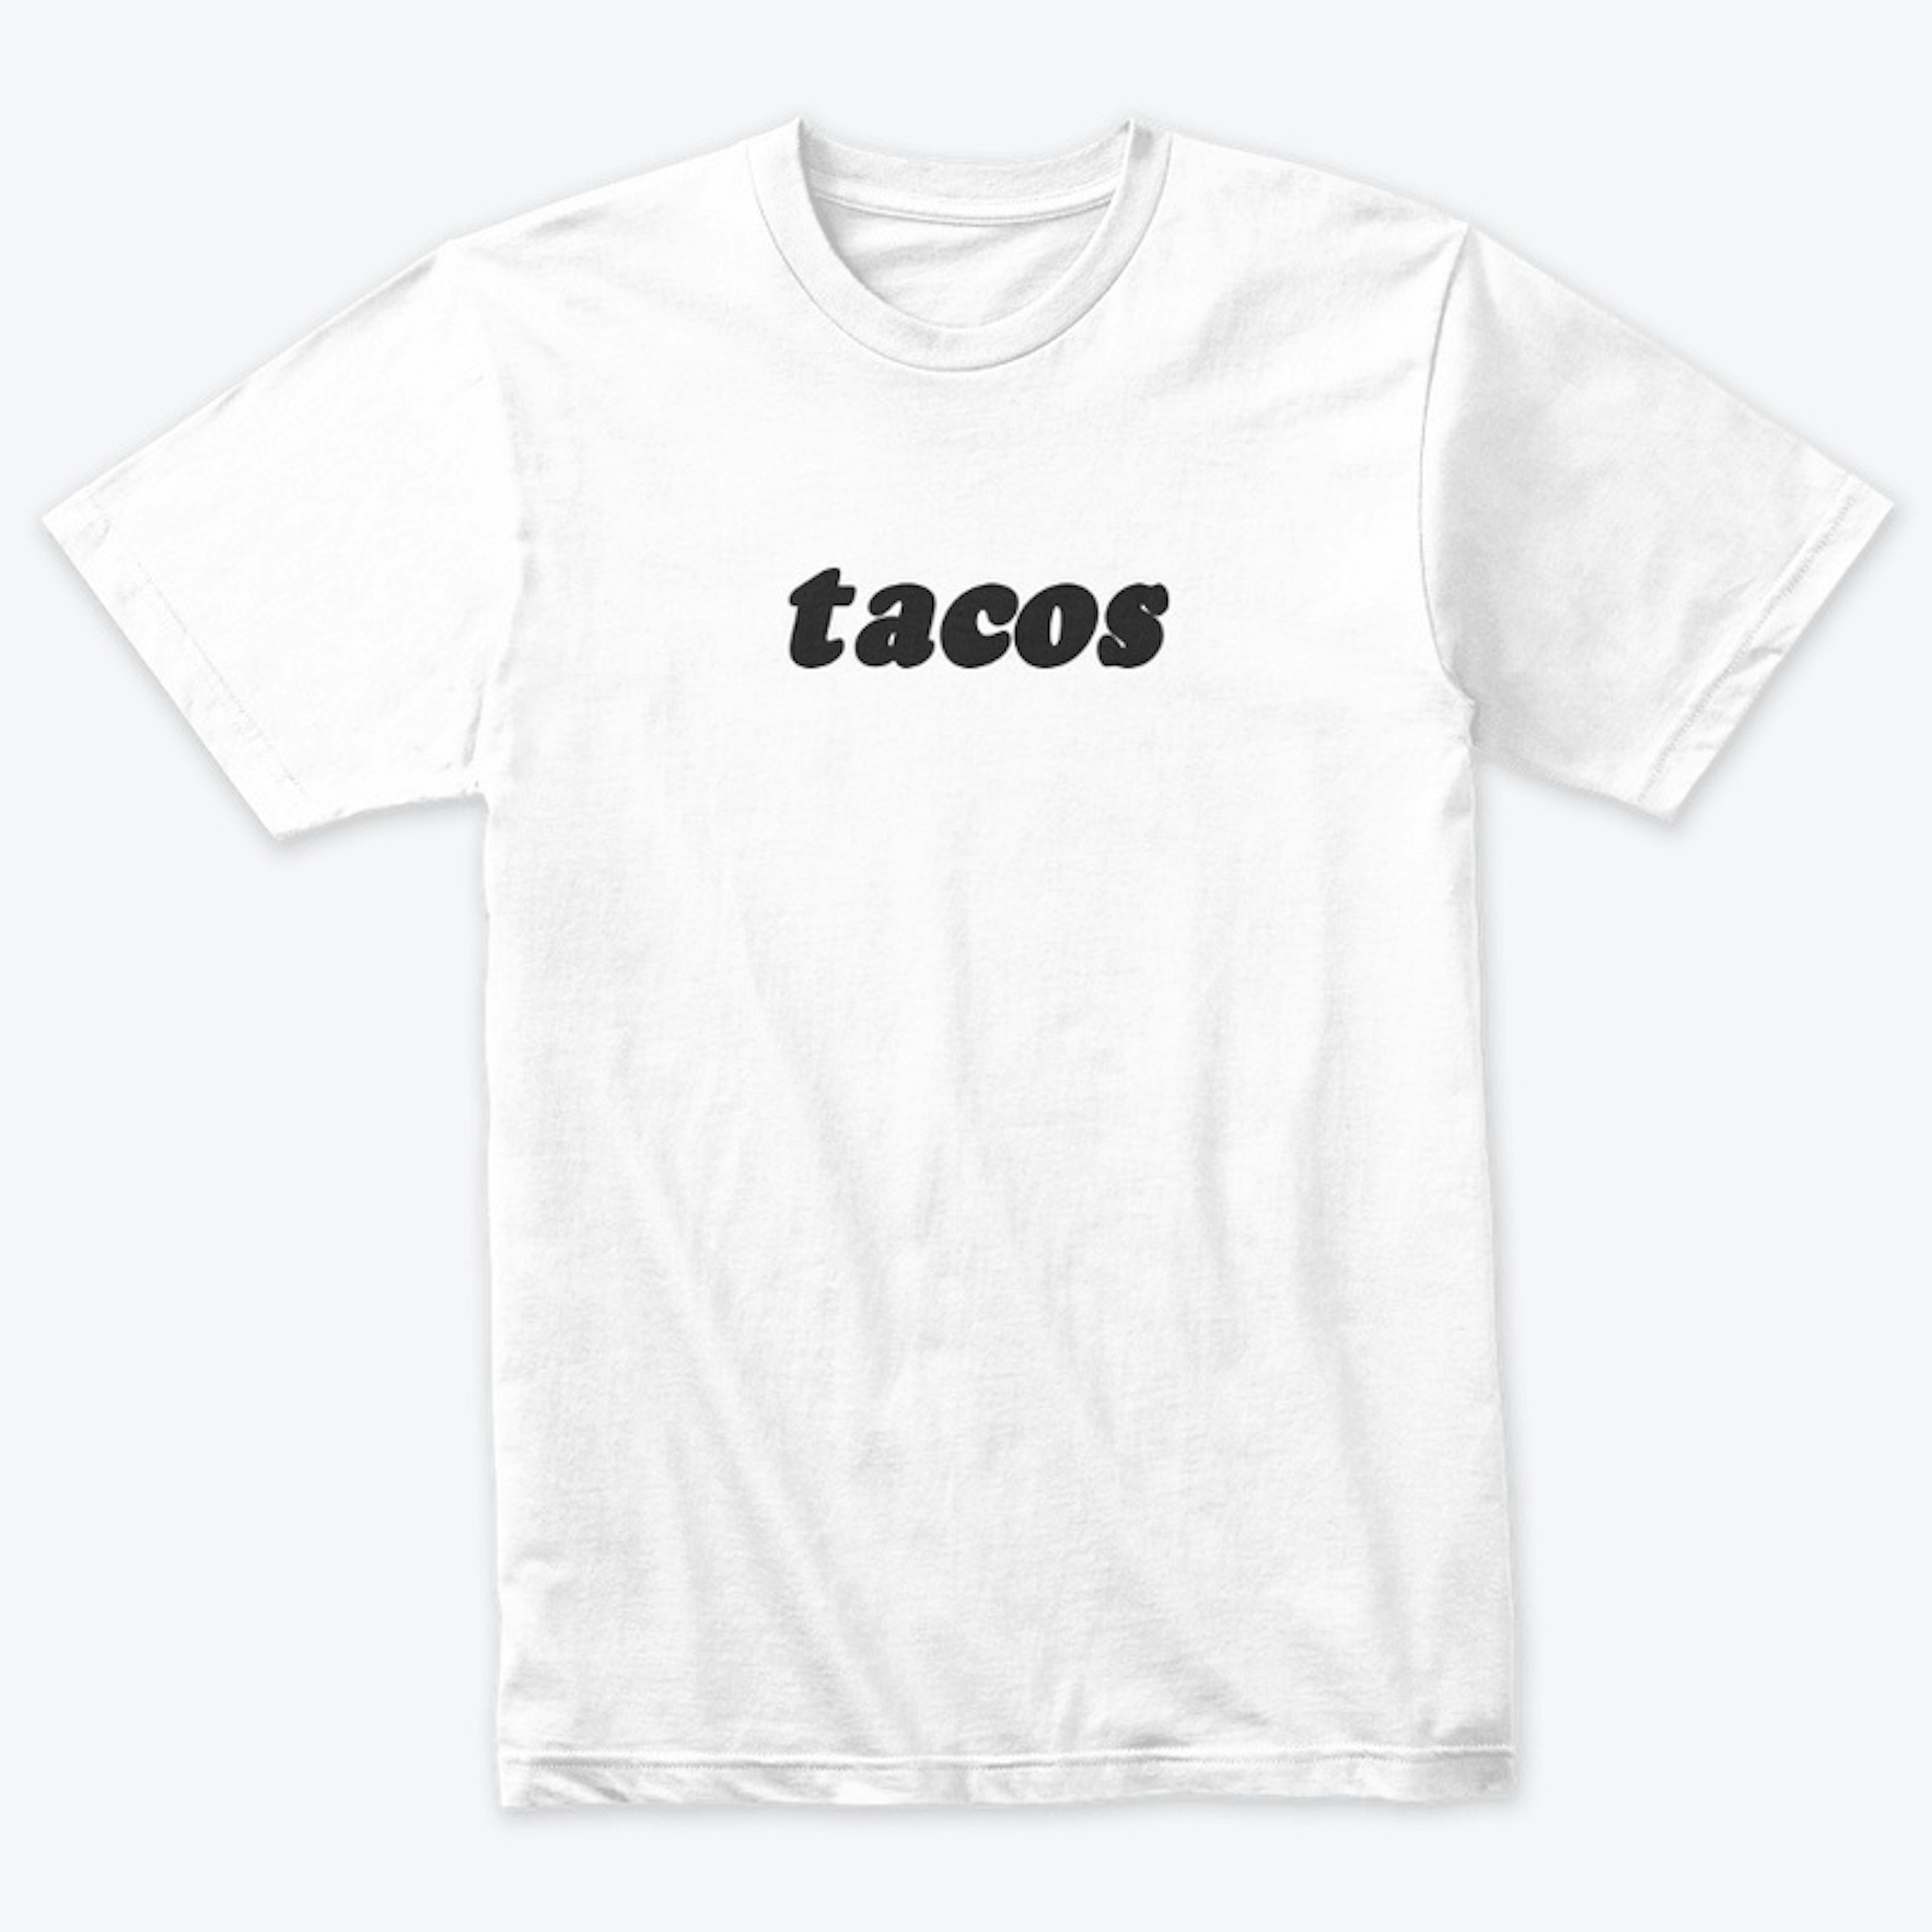 tacos (version 1)